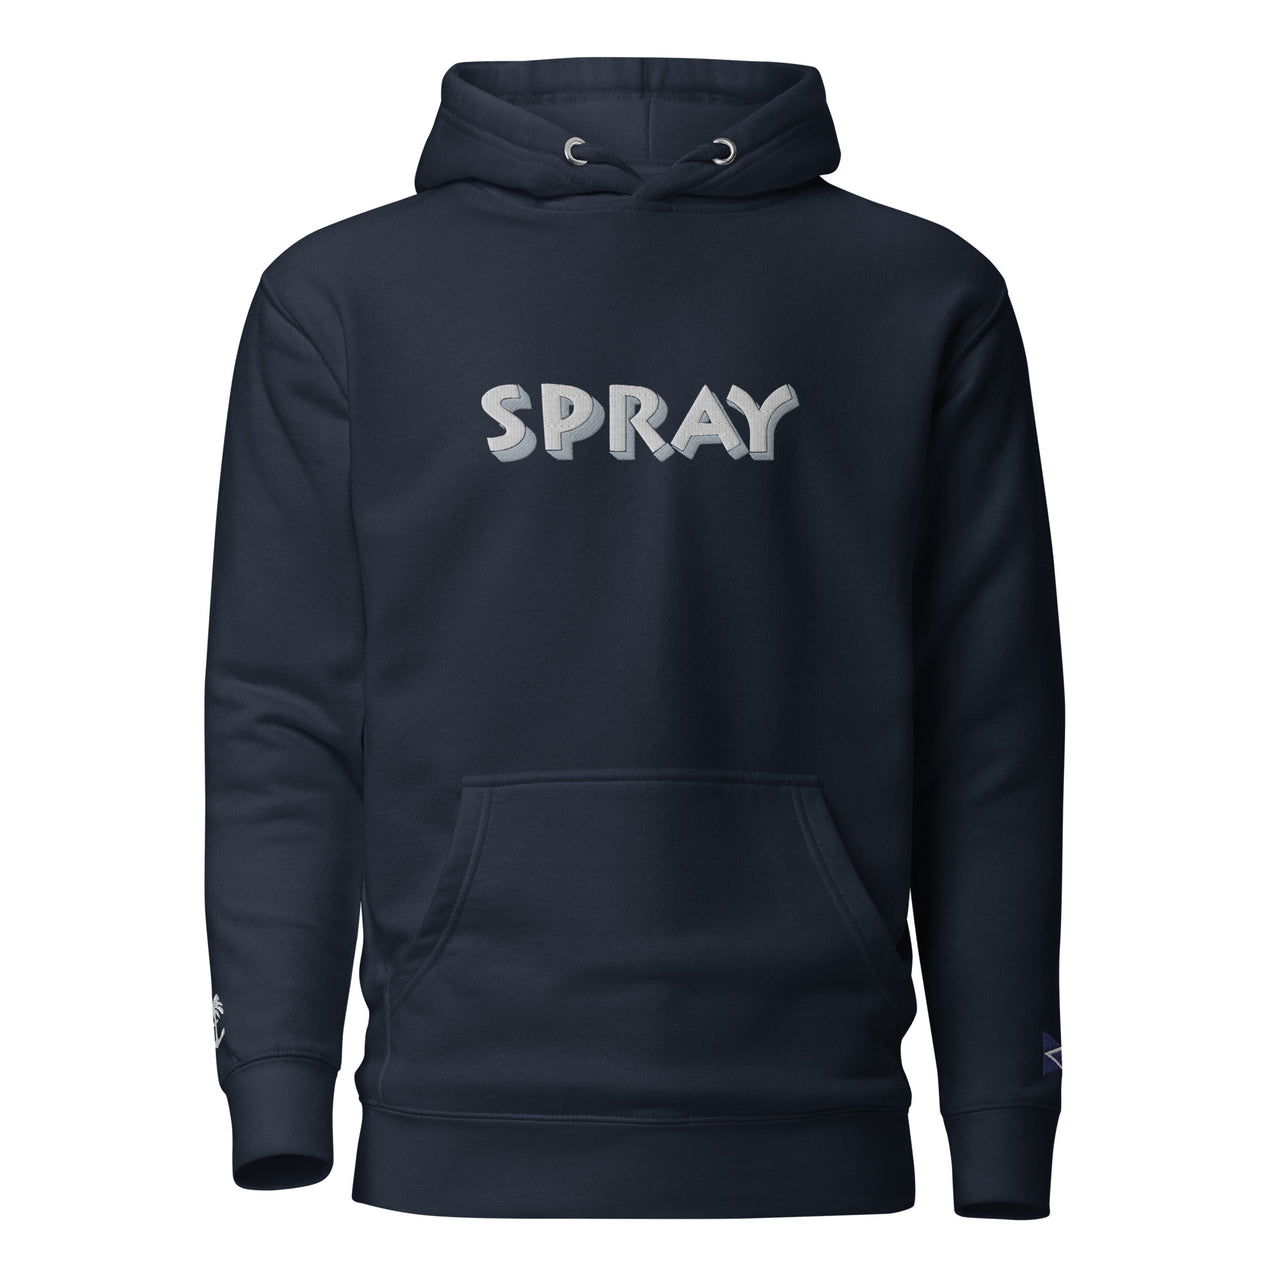 SPRAY- Premium Embroidered Unisex Hoodie- Navy Blue